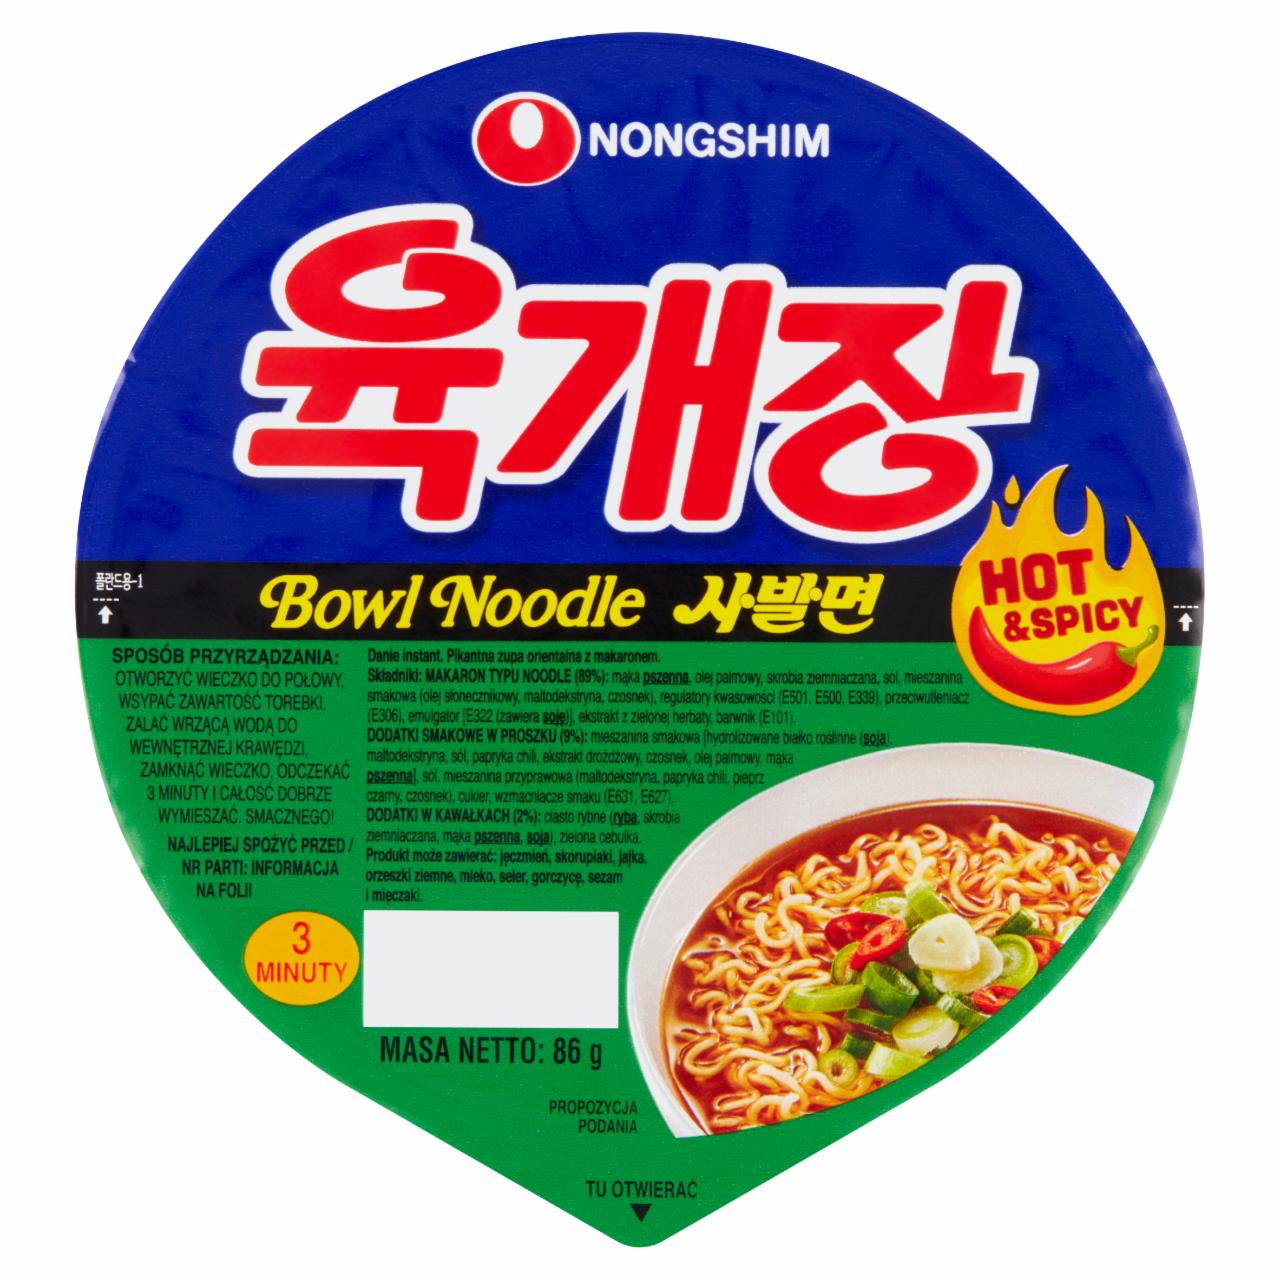 Fotografie - Bowl Noodles Hot & Spicy Nongshim